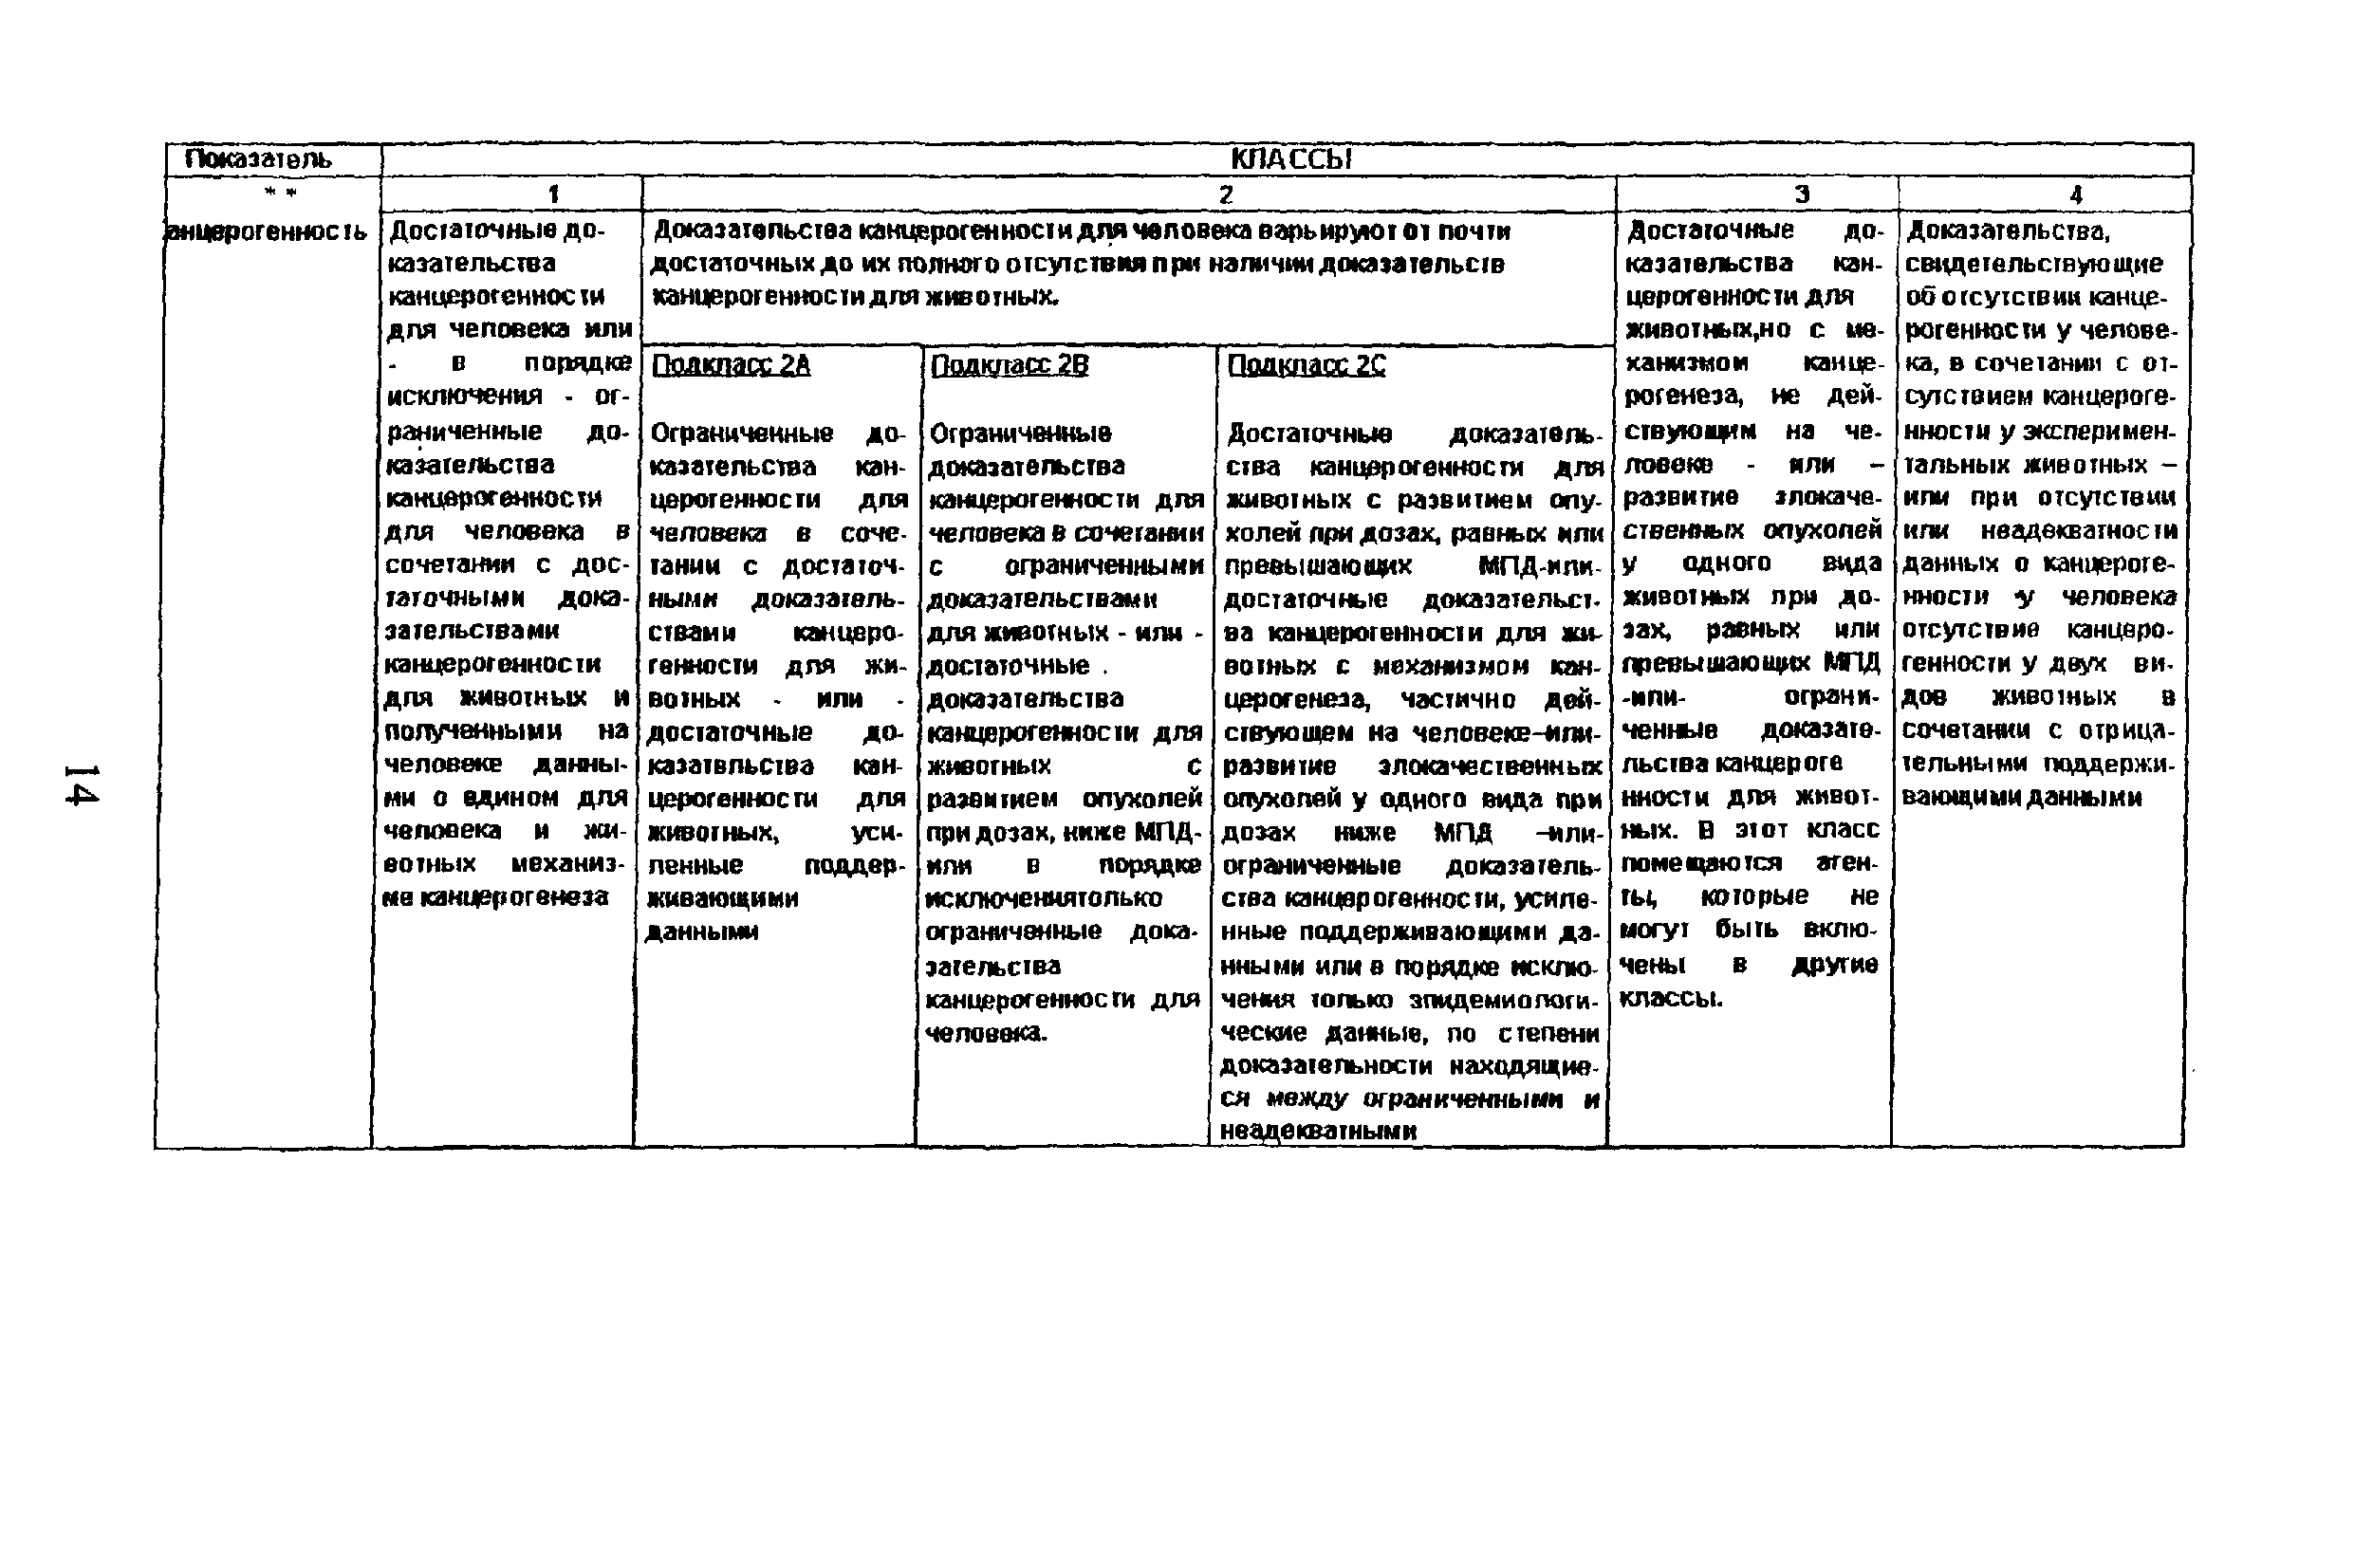 Методические рекомендации 2001/26